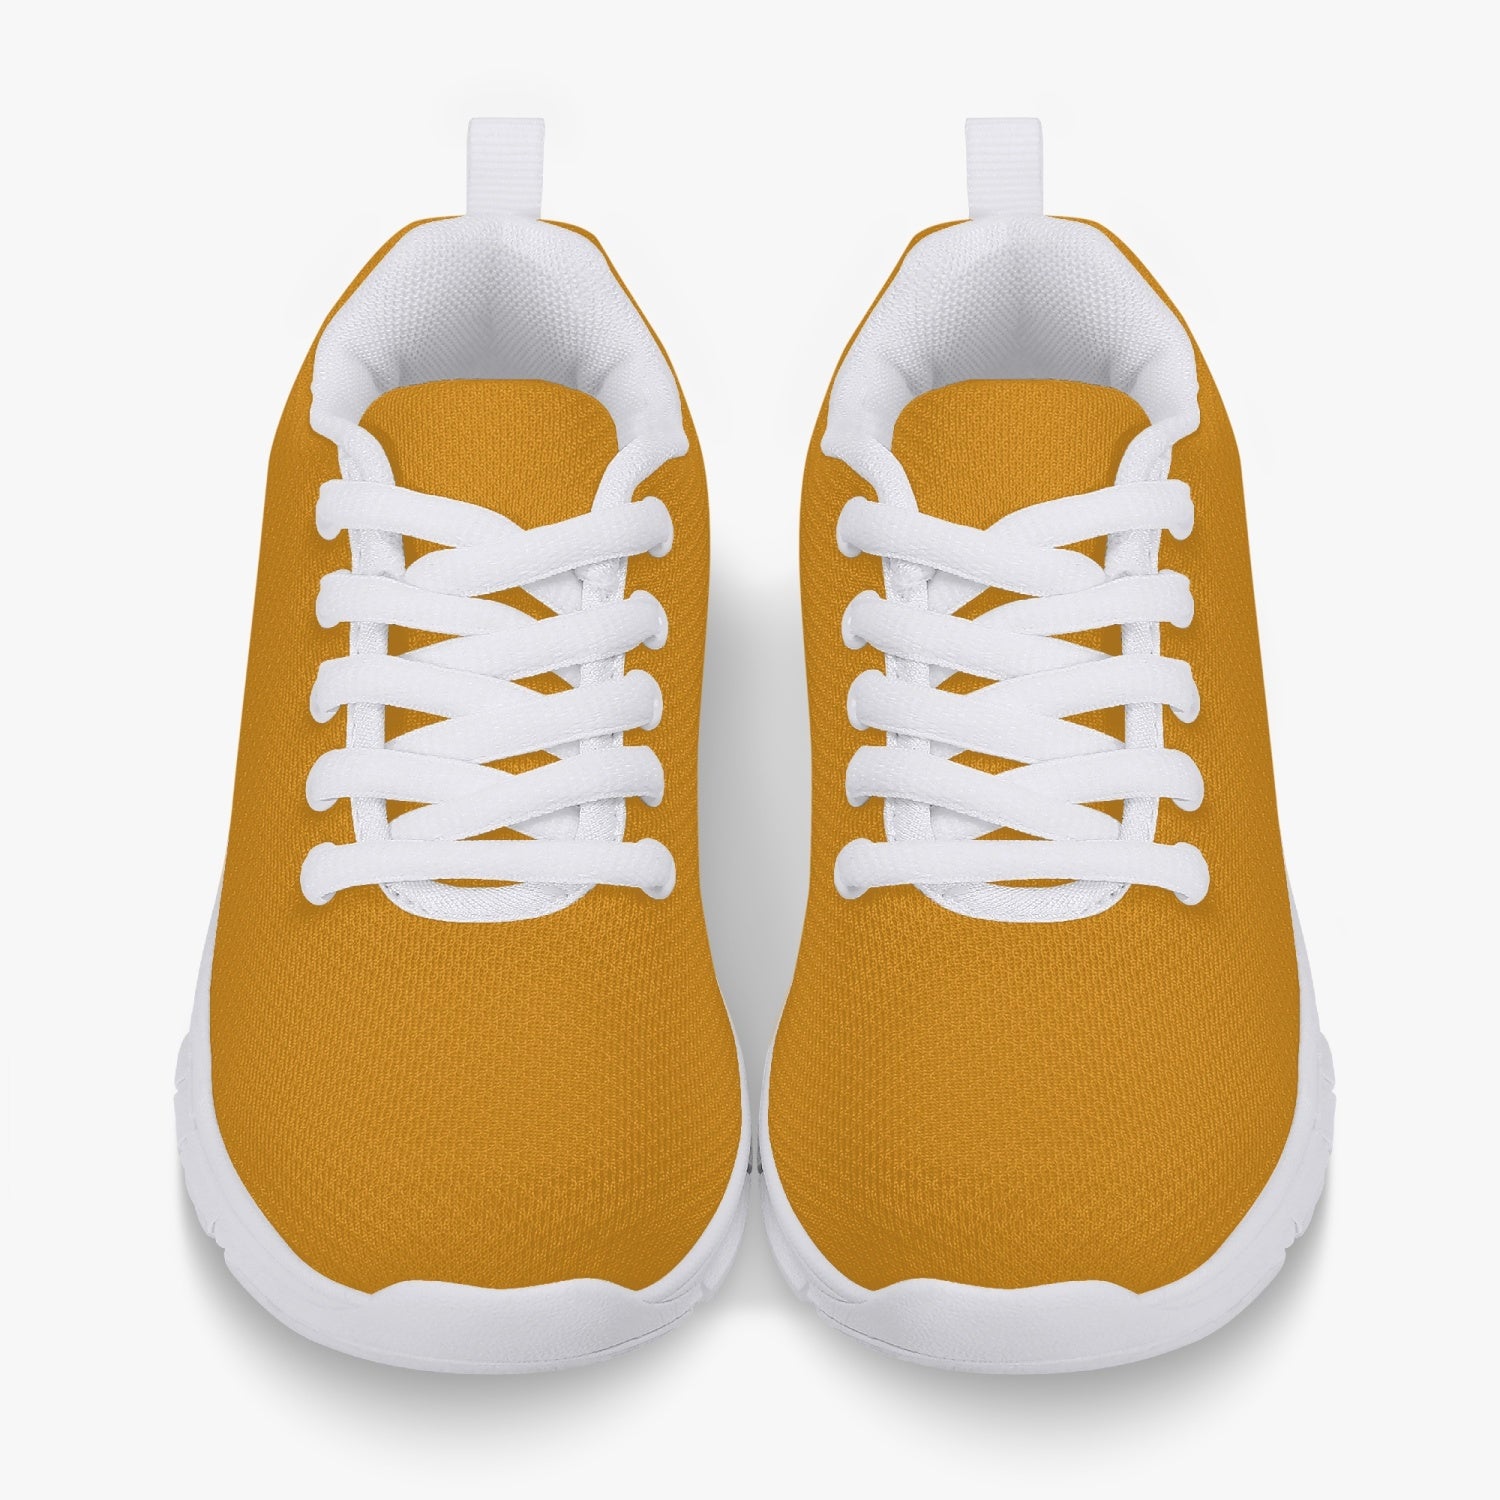 Yellow Tulips, Kids' Lightweight Mesh Sneakers - White, by Sensus Studio Design